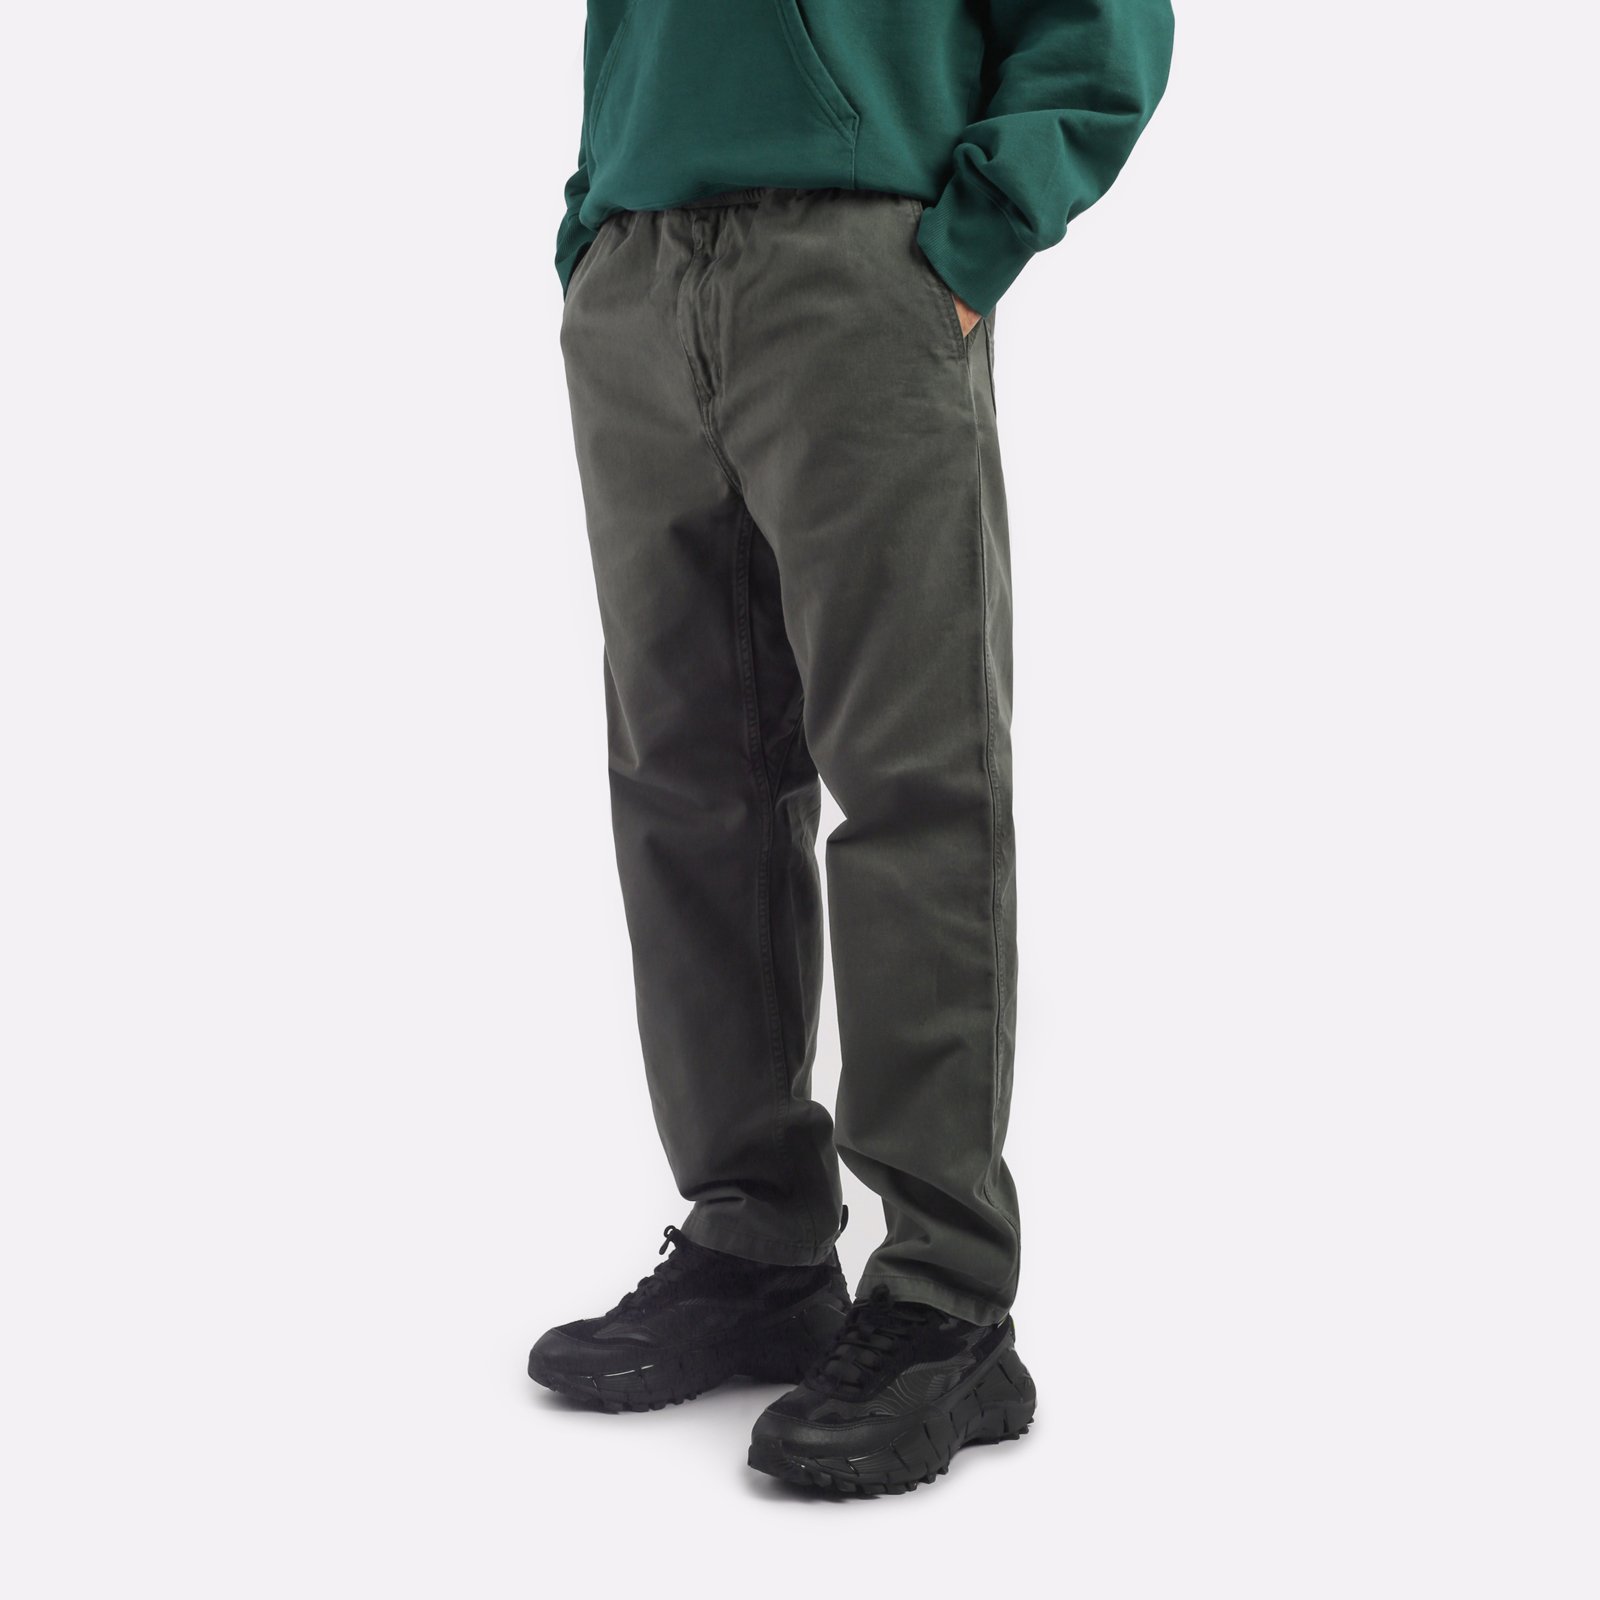 мужские брюки Carhartt WIP Flint Pant  (I029919-jura)  - цена, описание, фото 3